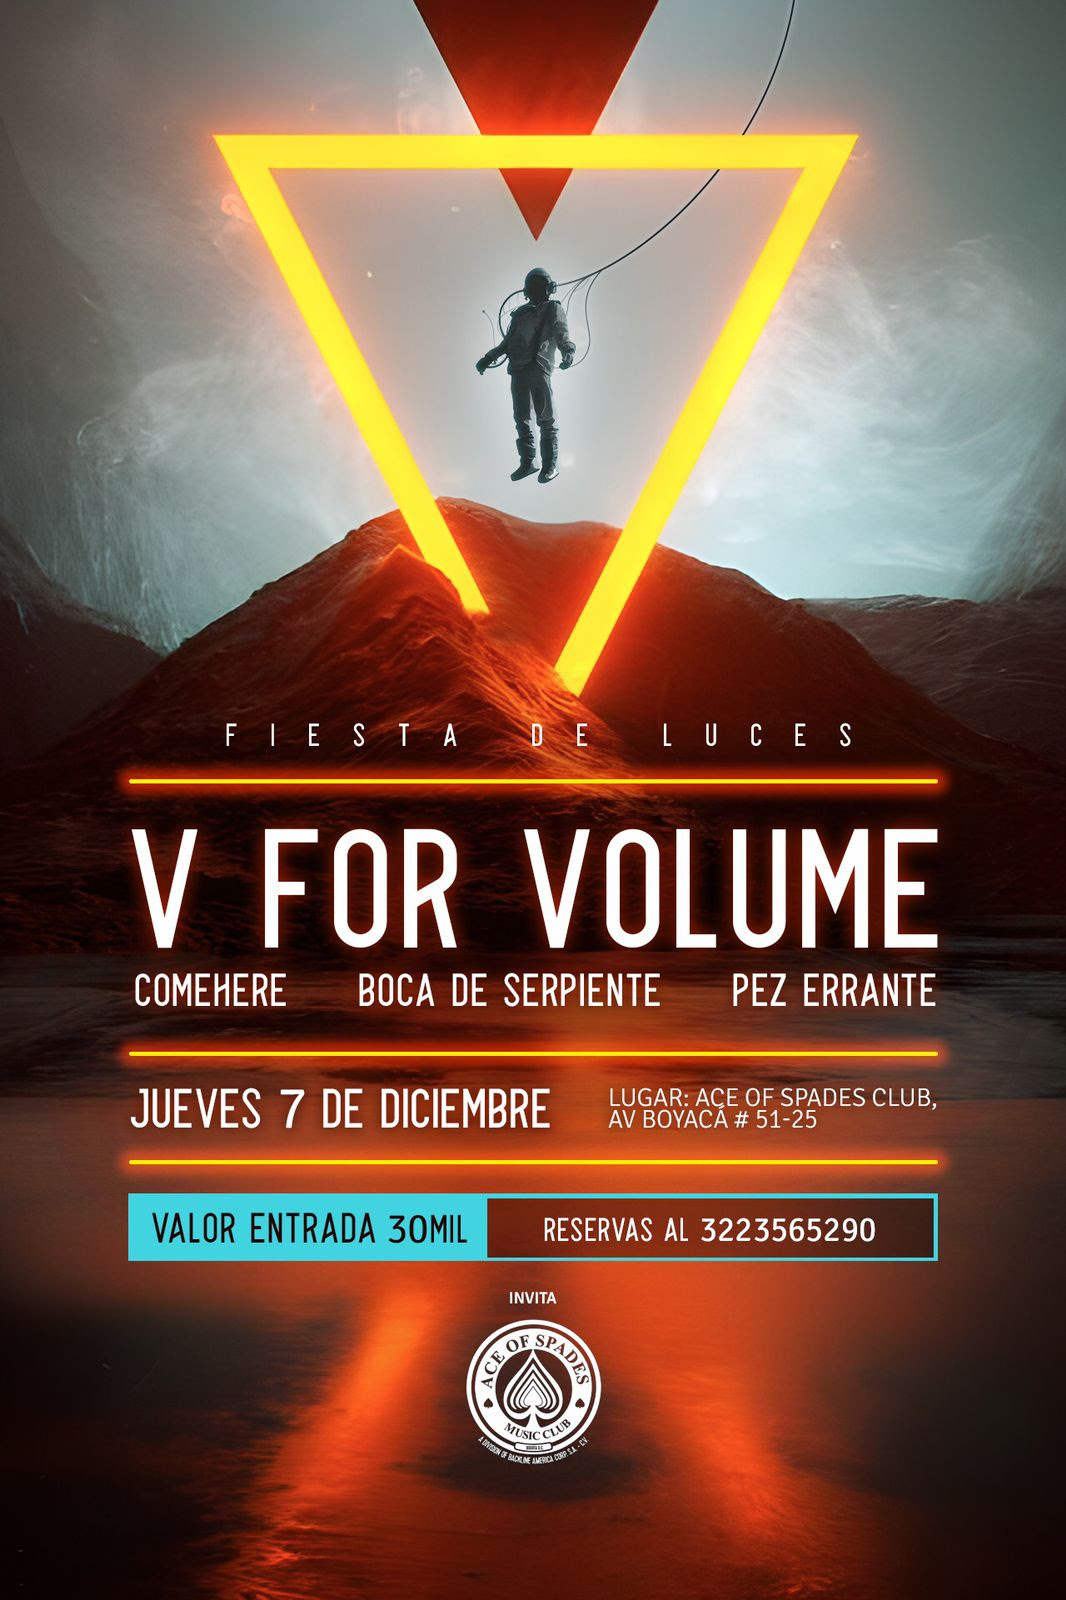 V For Volume, ComeHere, Boca de Serpiente y Pez Errante